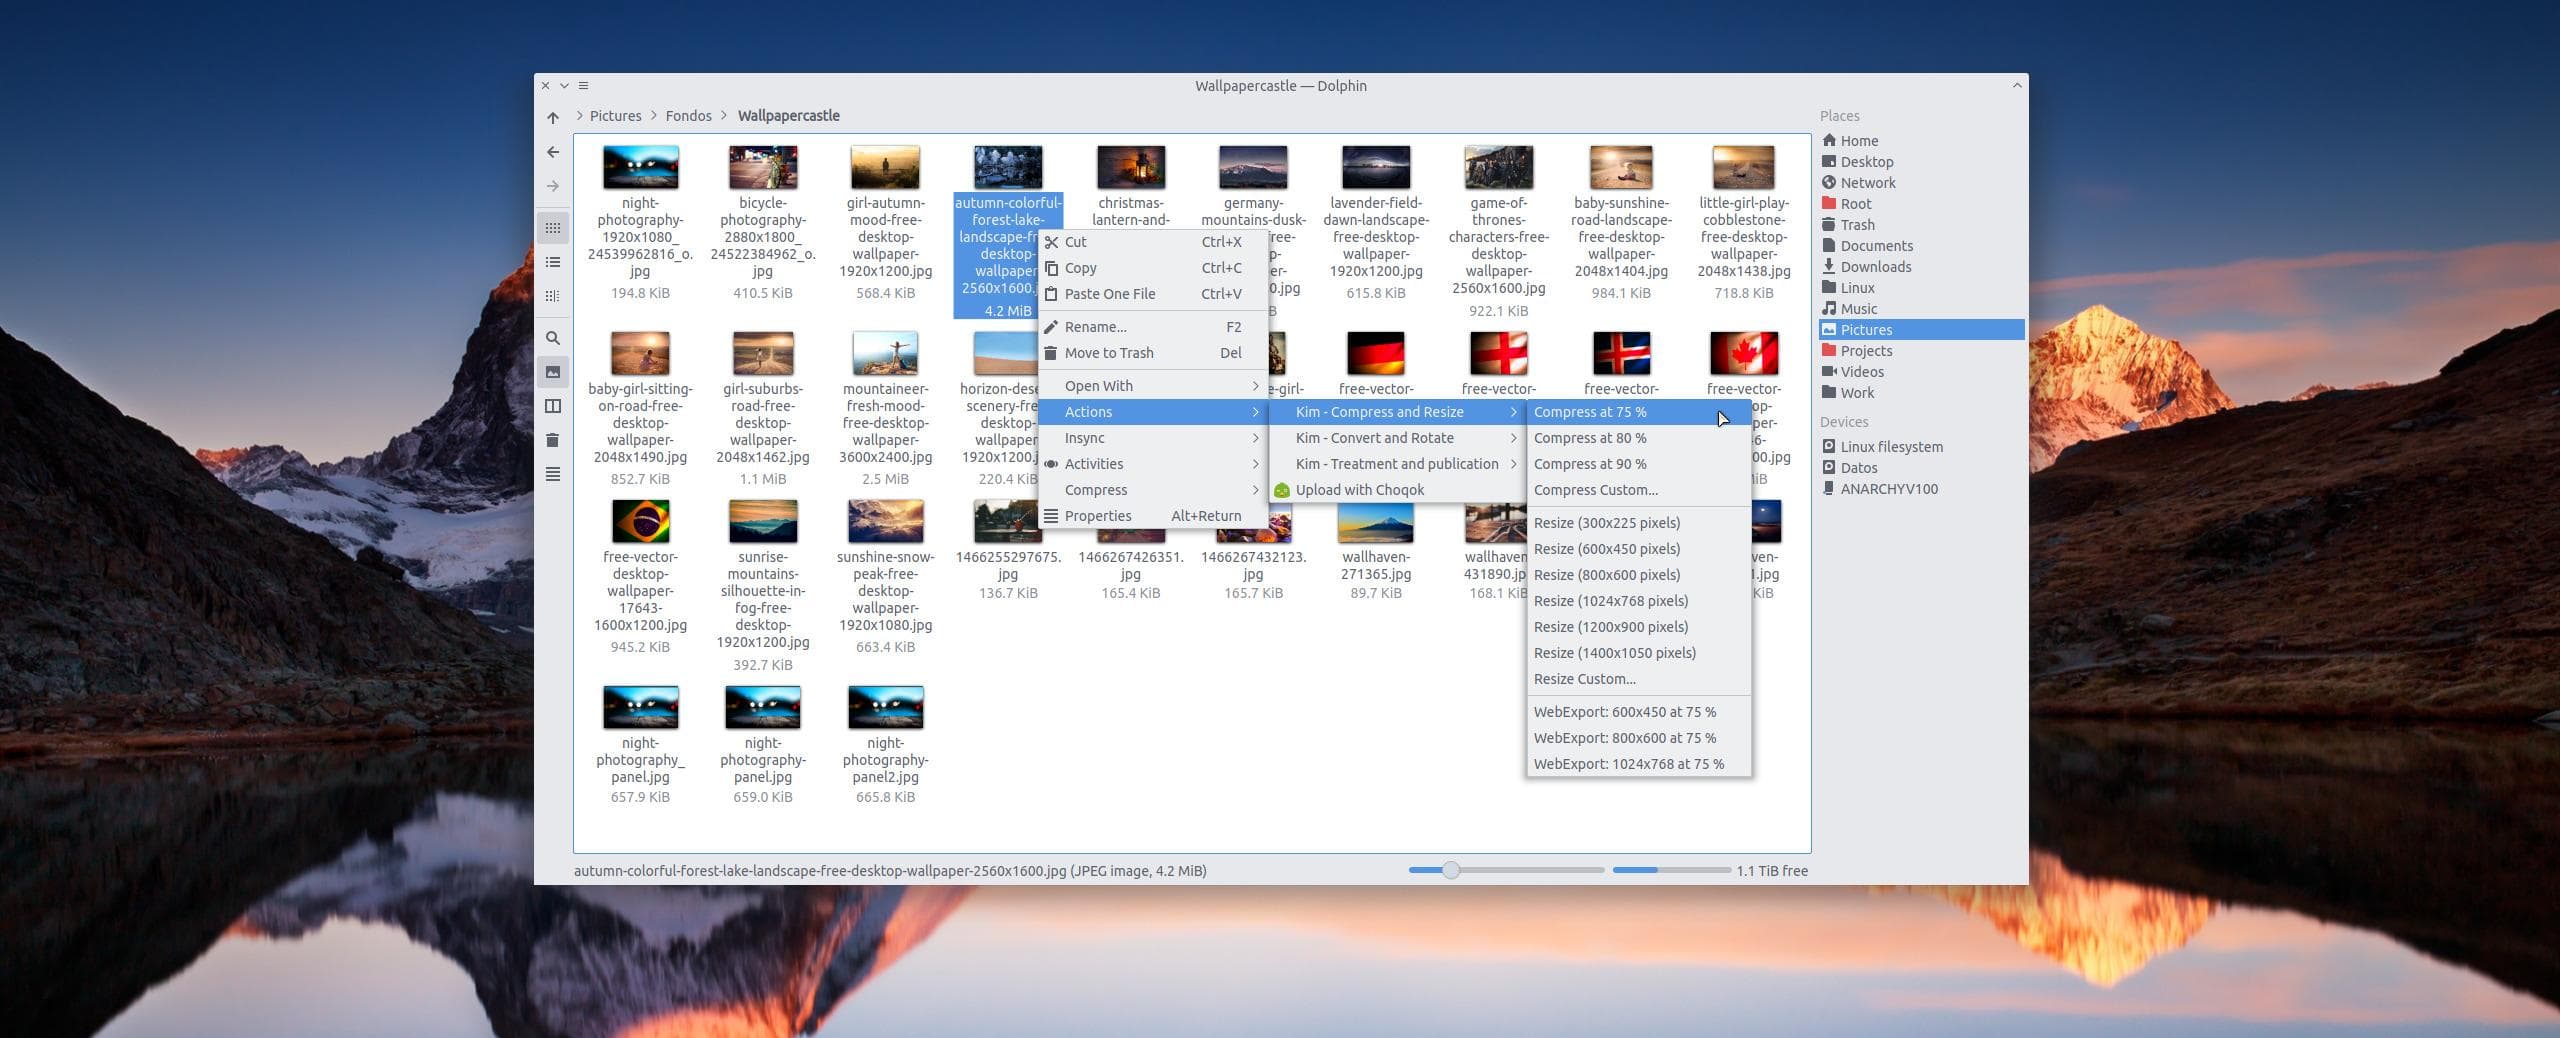 KDE Image Menu: comprime, convierte o cambia el tamaño de una imagen con el clic derecho